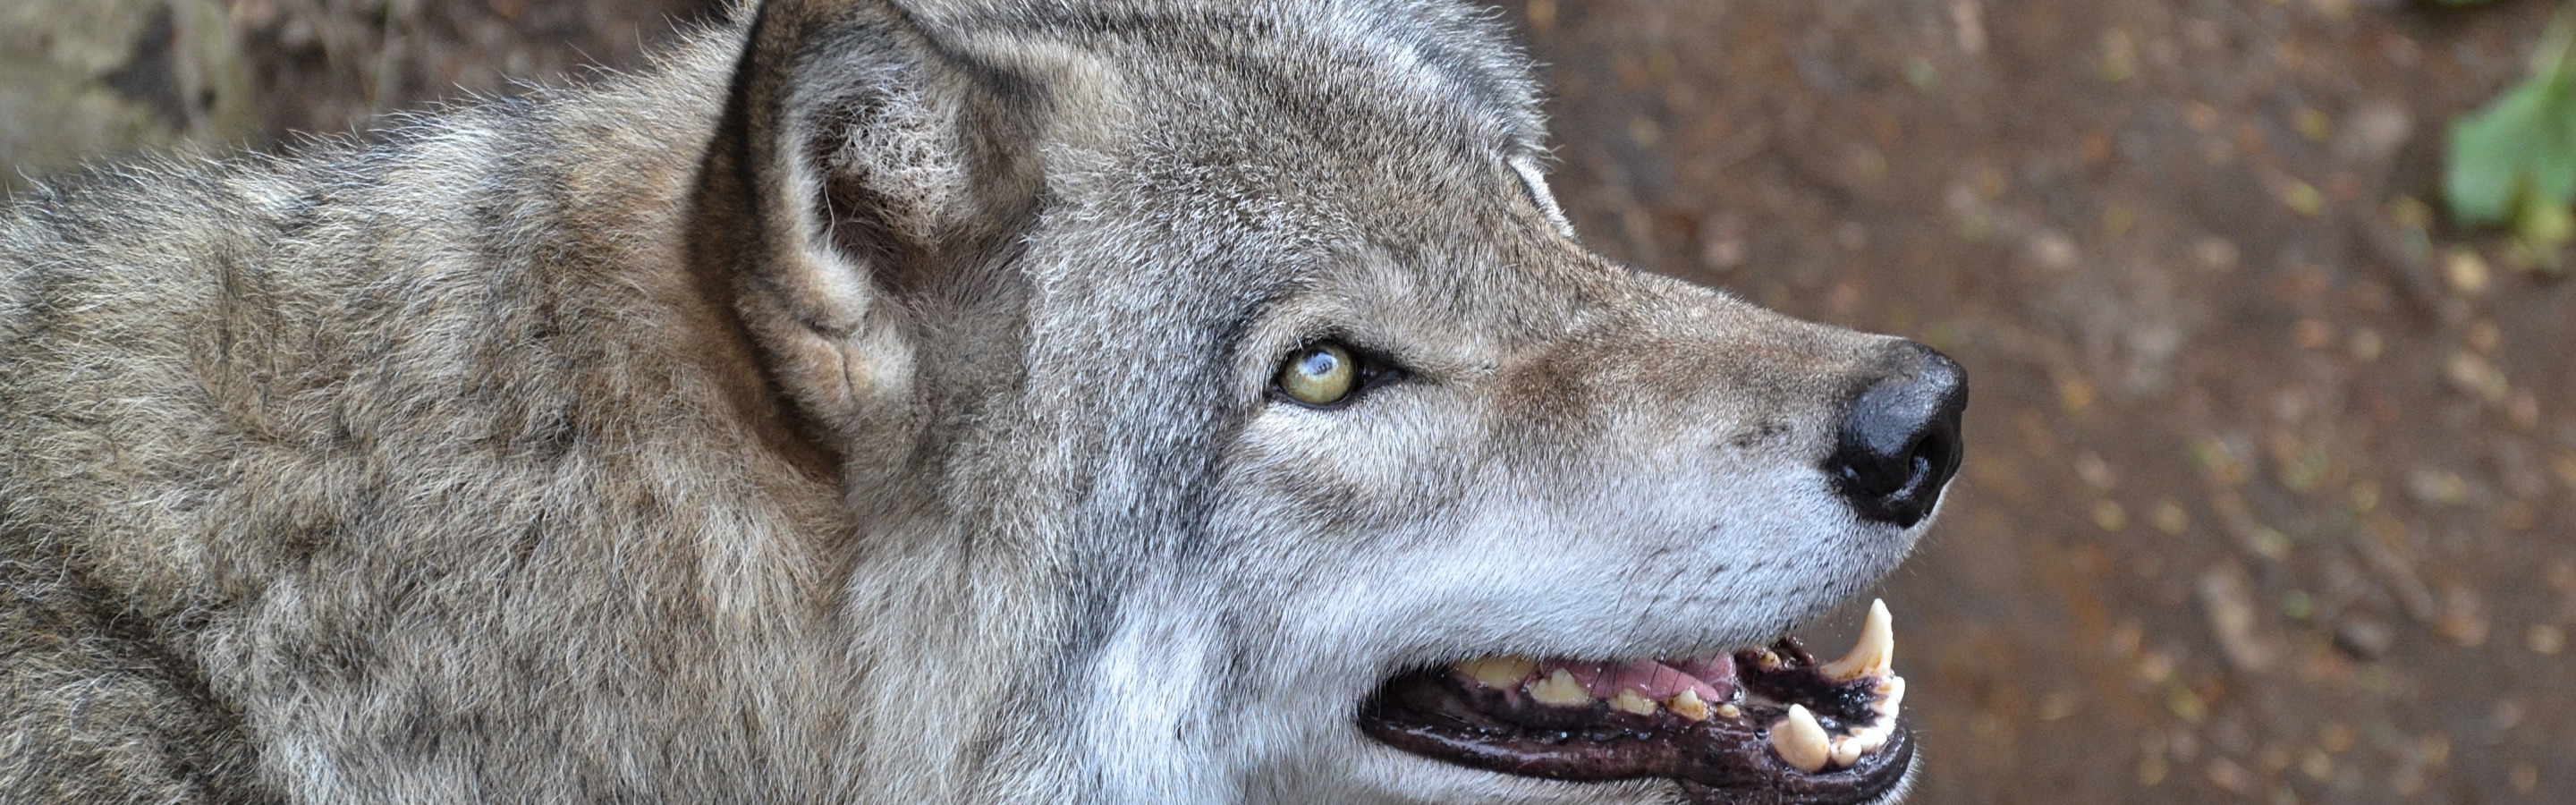 Пасть серого волка. Волк портрет. Фотография волка с клыками. Верхний клык серого волка. Серые волки на Украине.